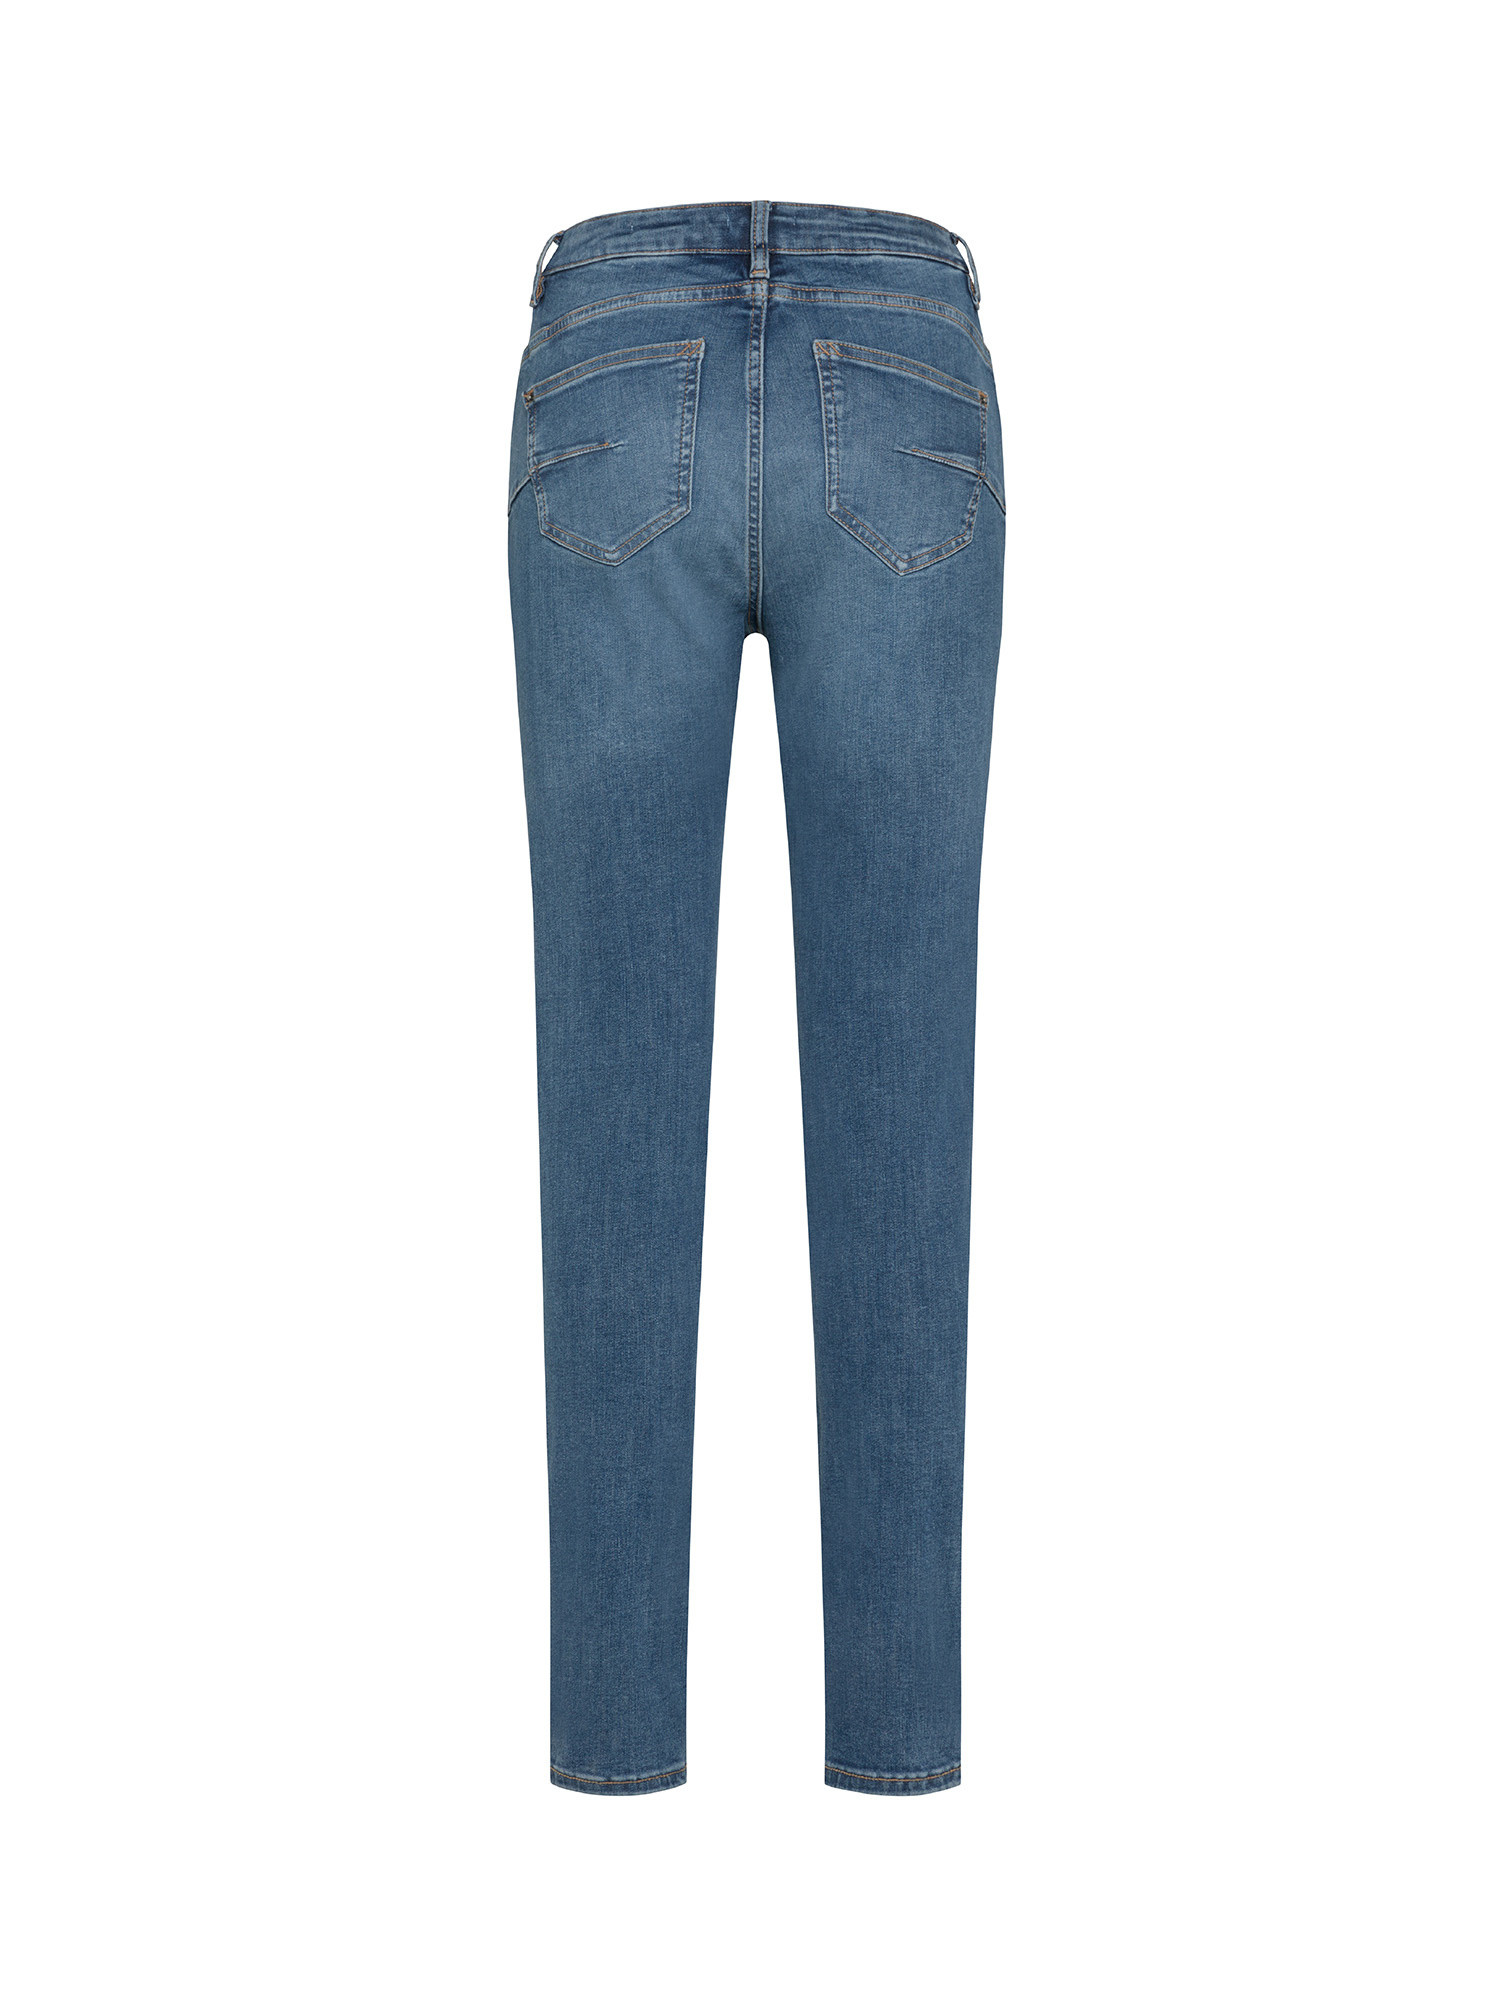 Esprit - Jeans skinny cinque tasche, Denim, large image number 1